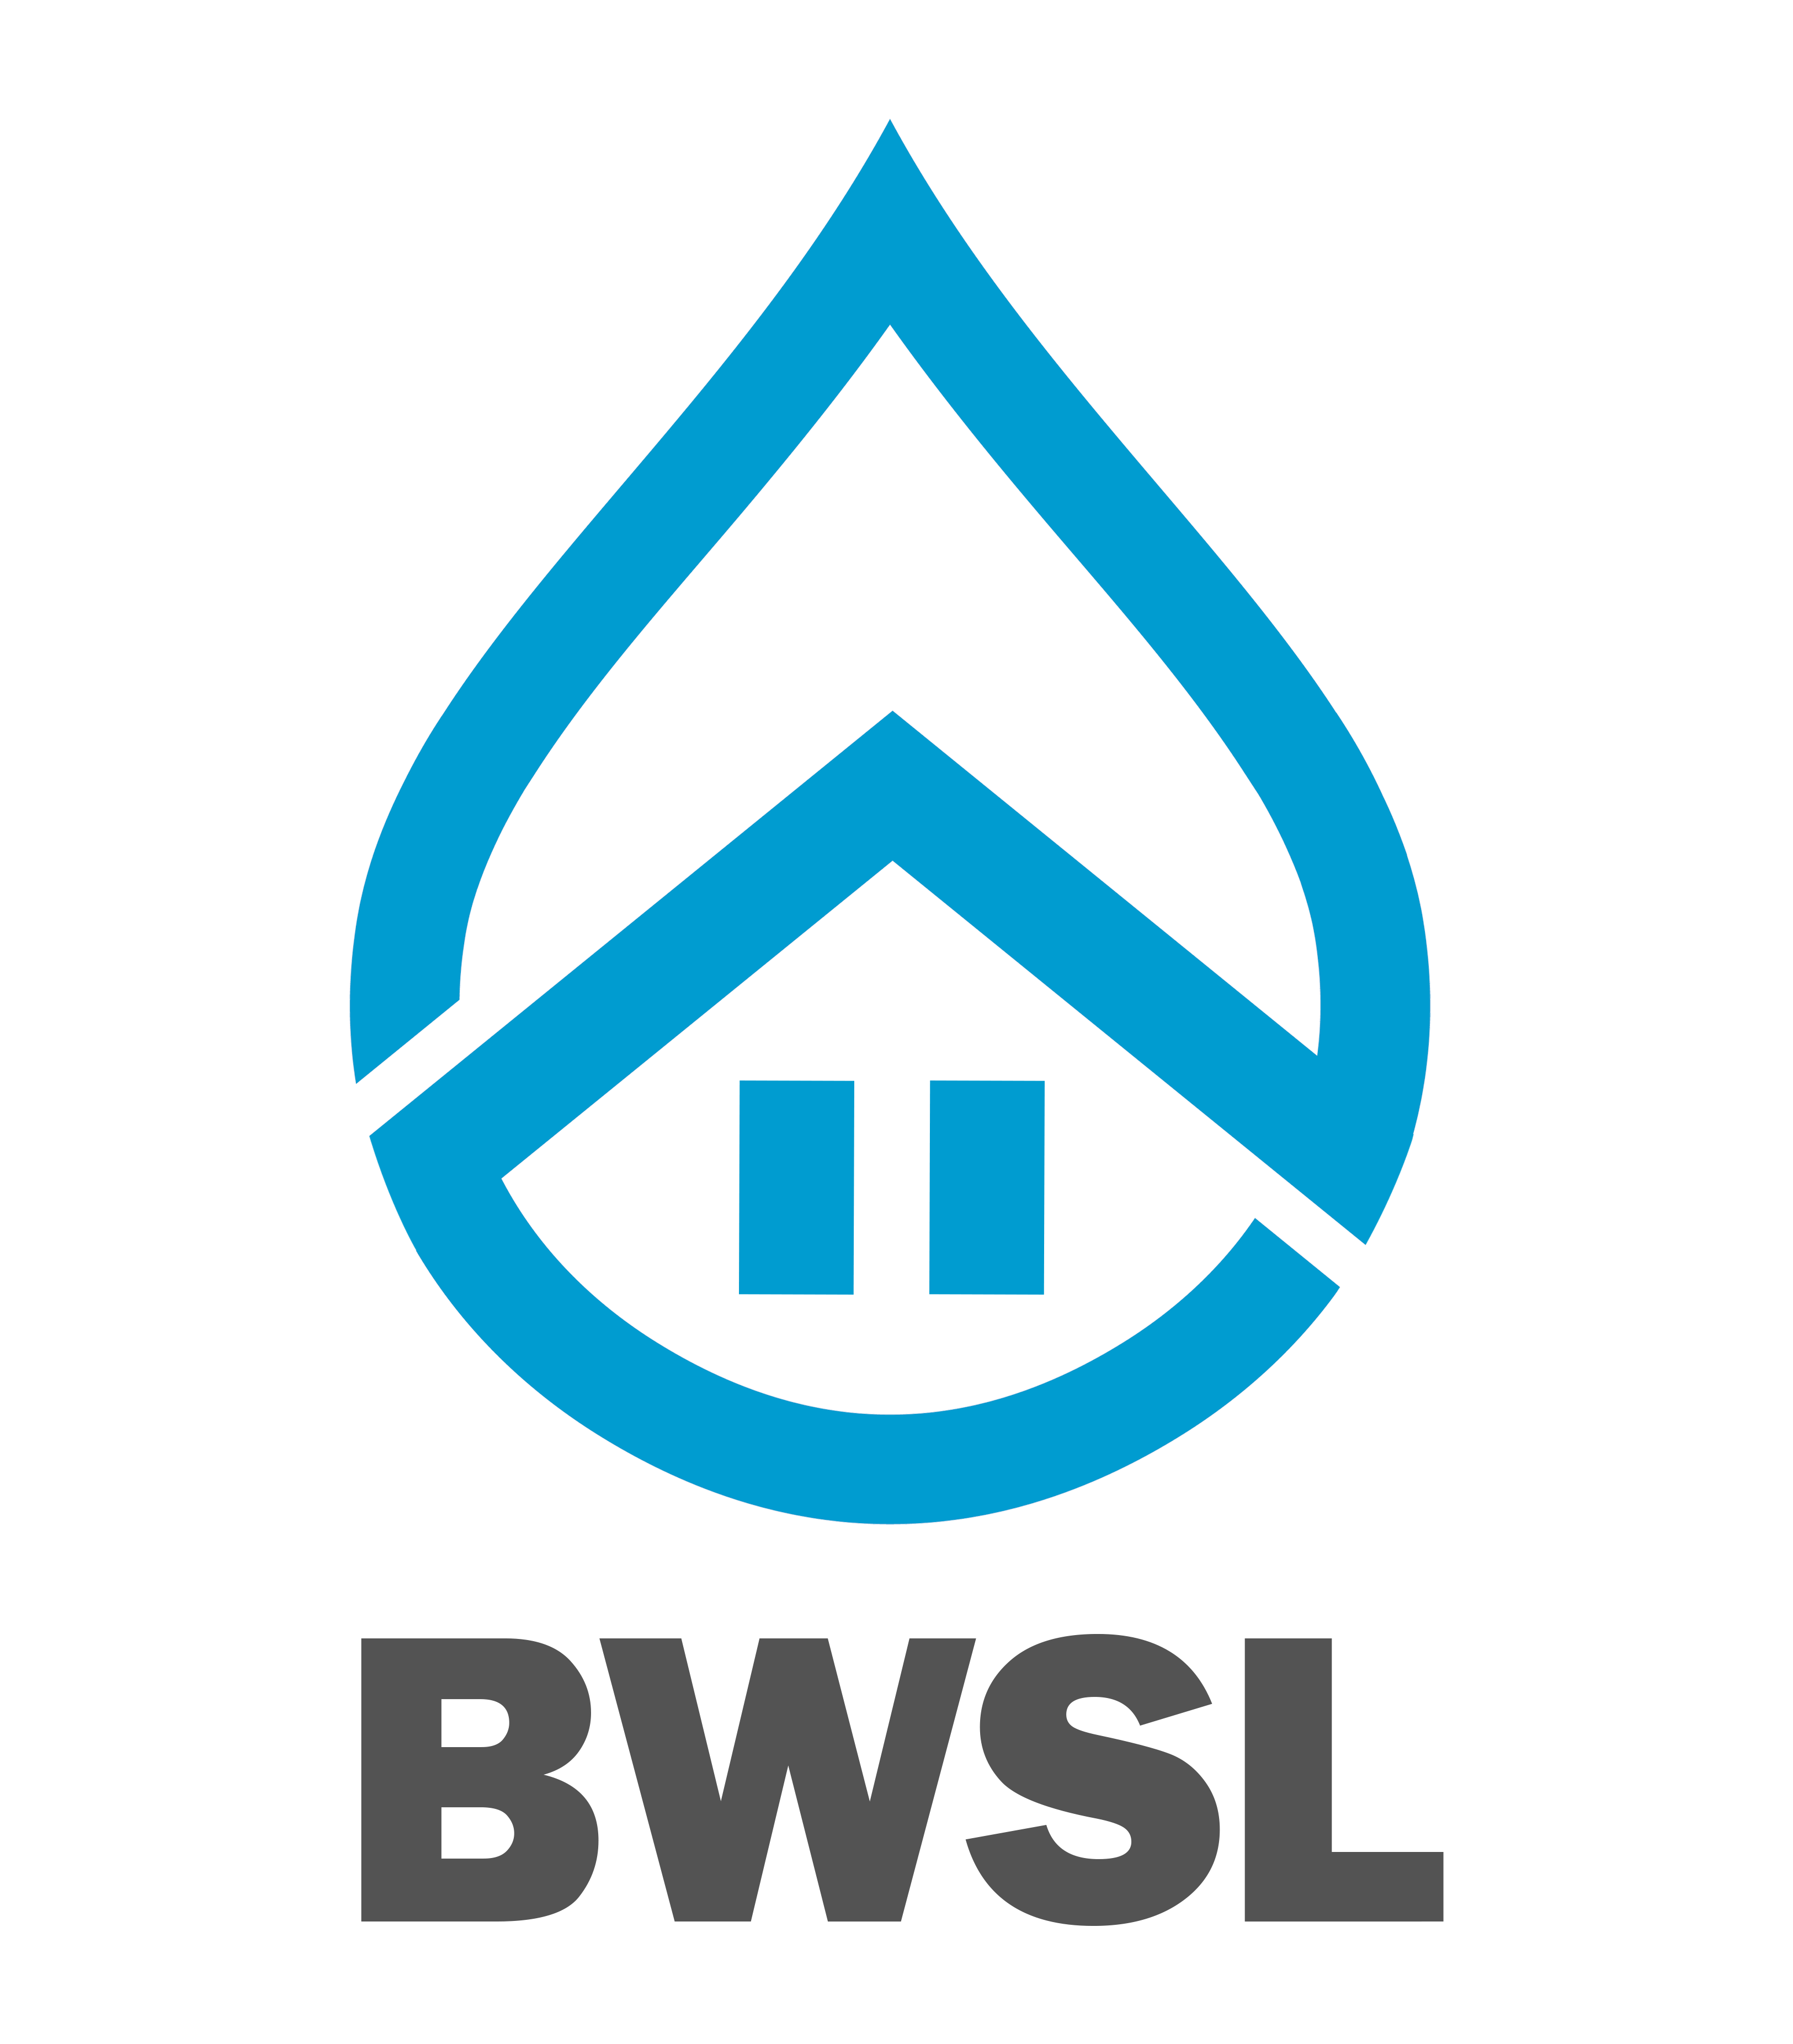 Basement Waterproofing Specialists Ltd